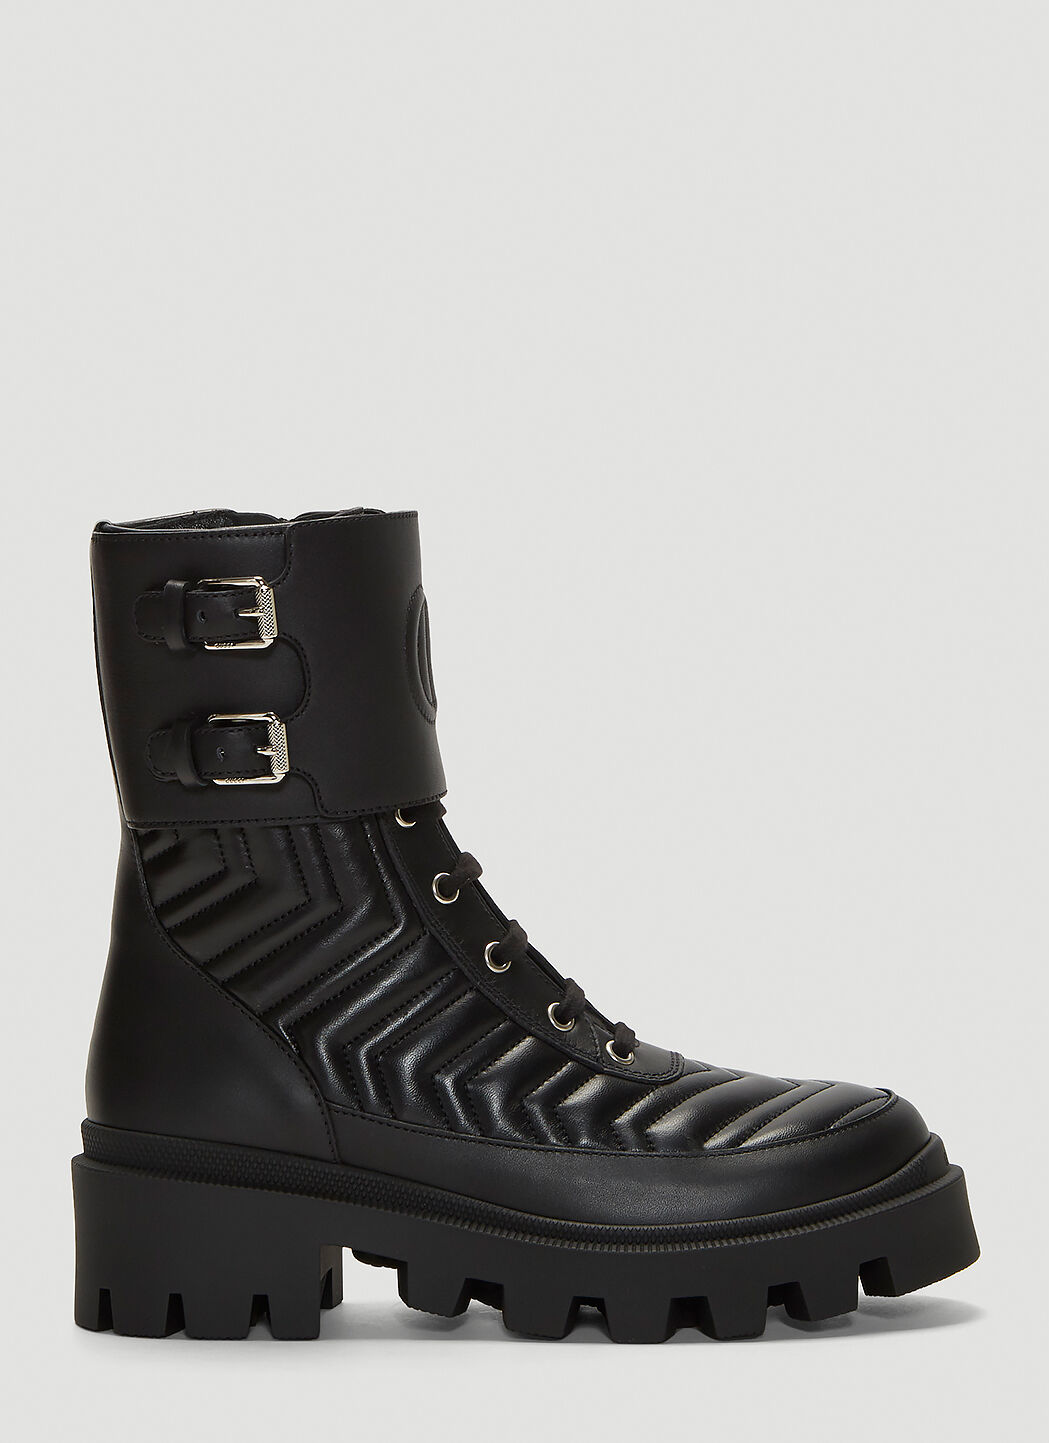 Saint Laurent Frances Leather Boots   Black sla0231015